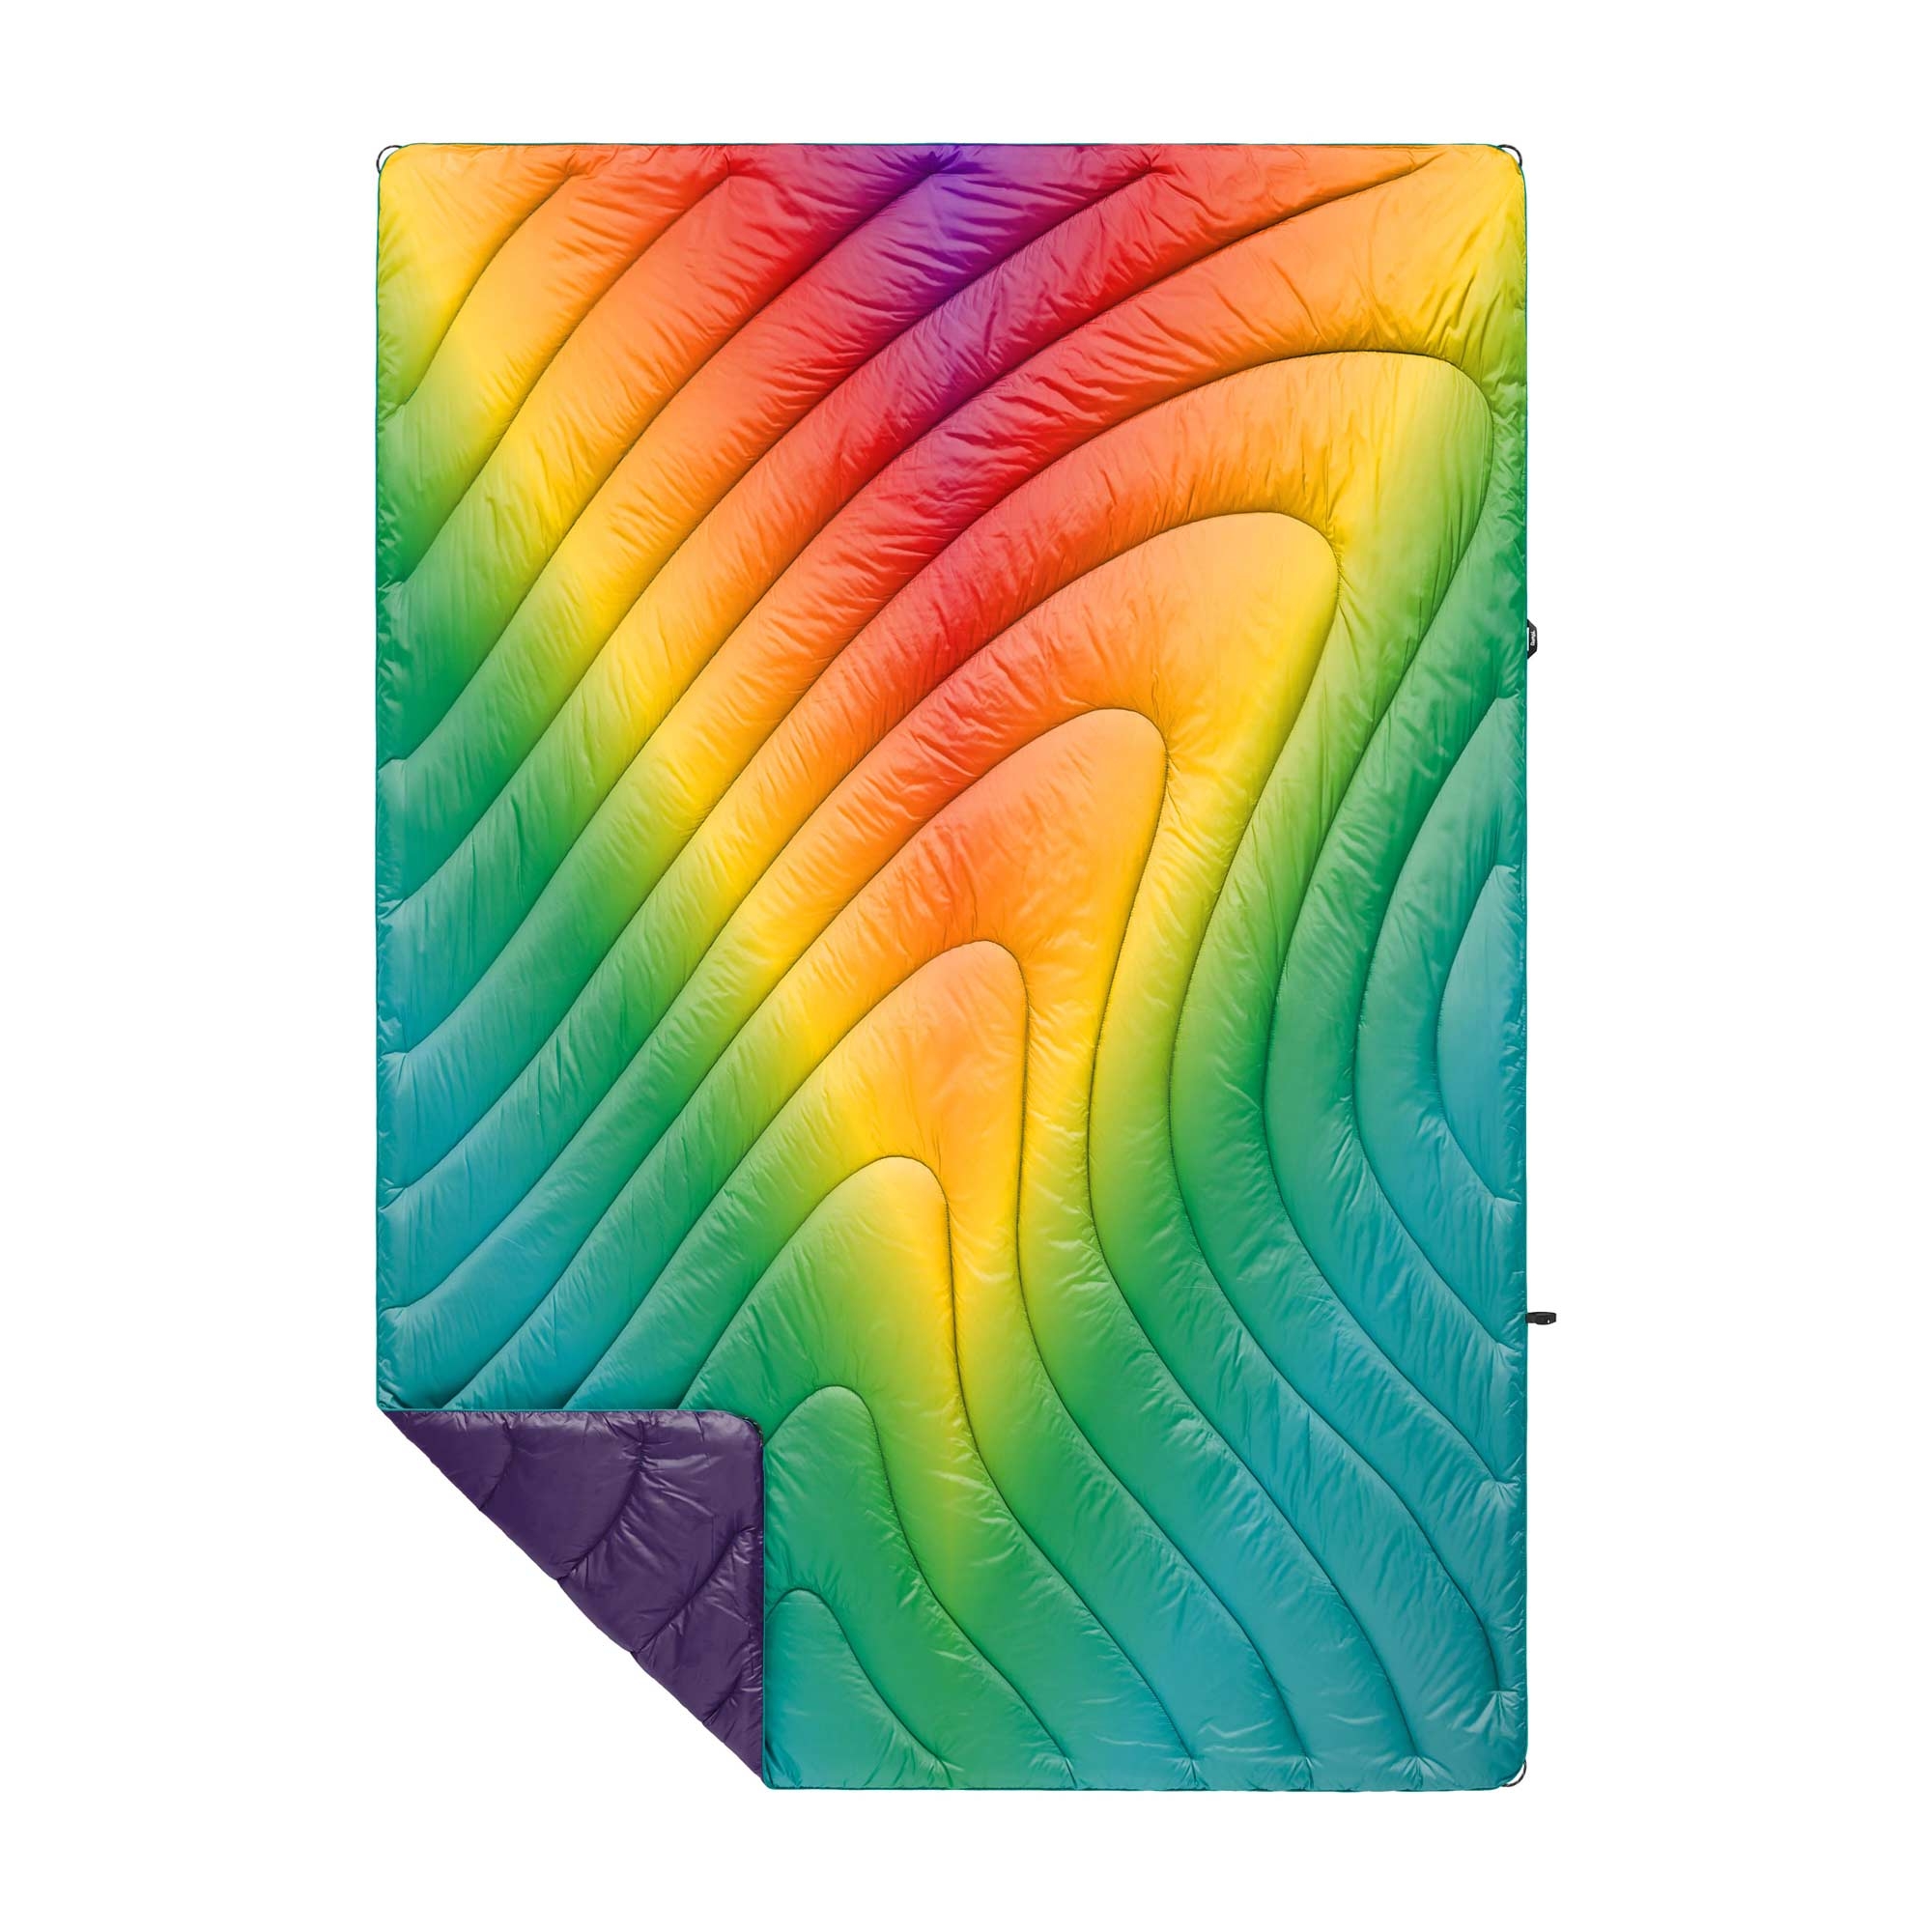 RUMPL Blanket ORIGINAL PUFFY PRINTED  / 1 PERS, rainbow prism